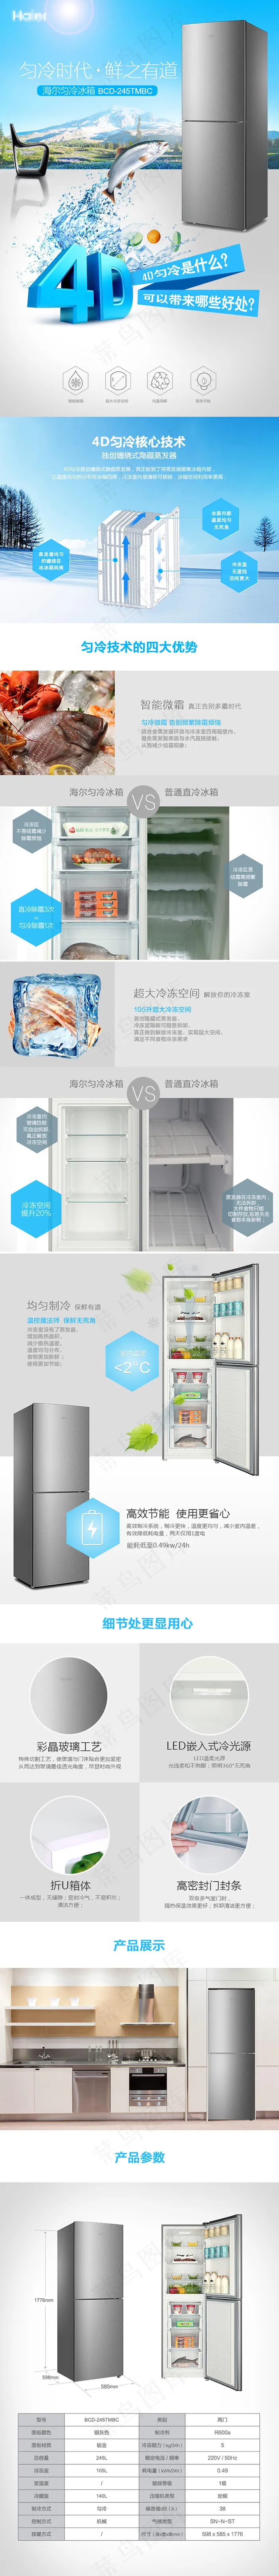 淘宝网店家庭冰箱详情页模板设计